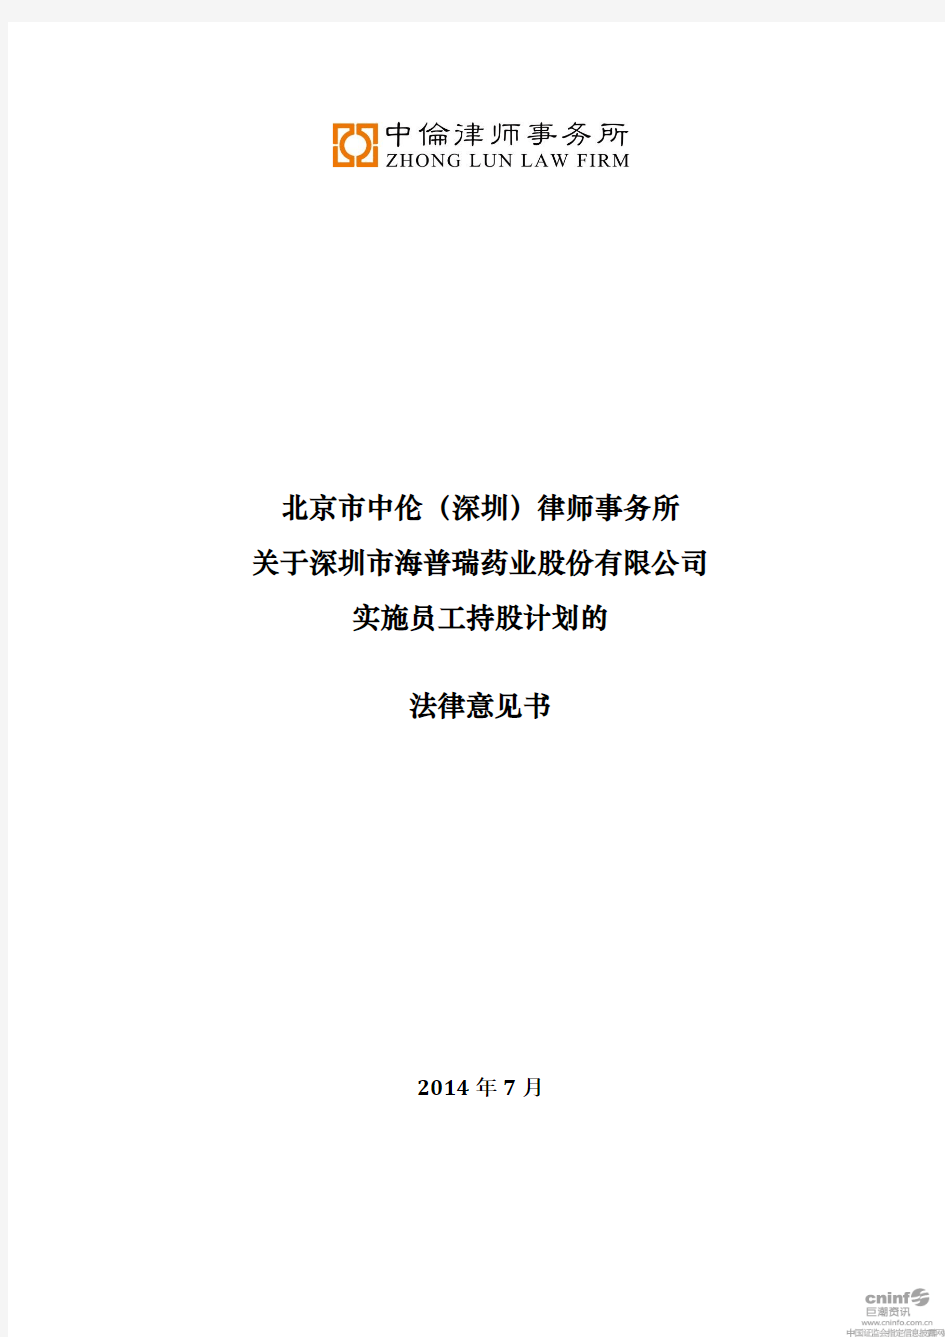 北京市中伦(深圳)律师事务所关于公司实施员工持股计划的法律意见书